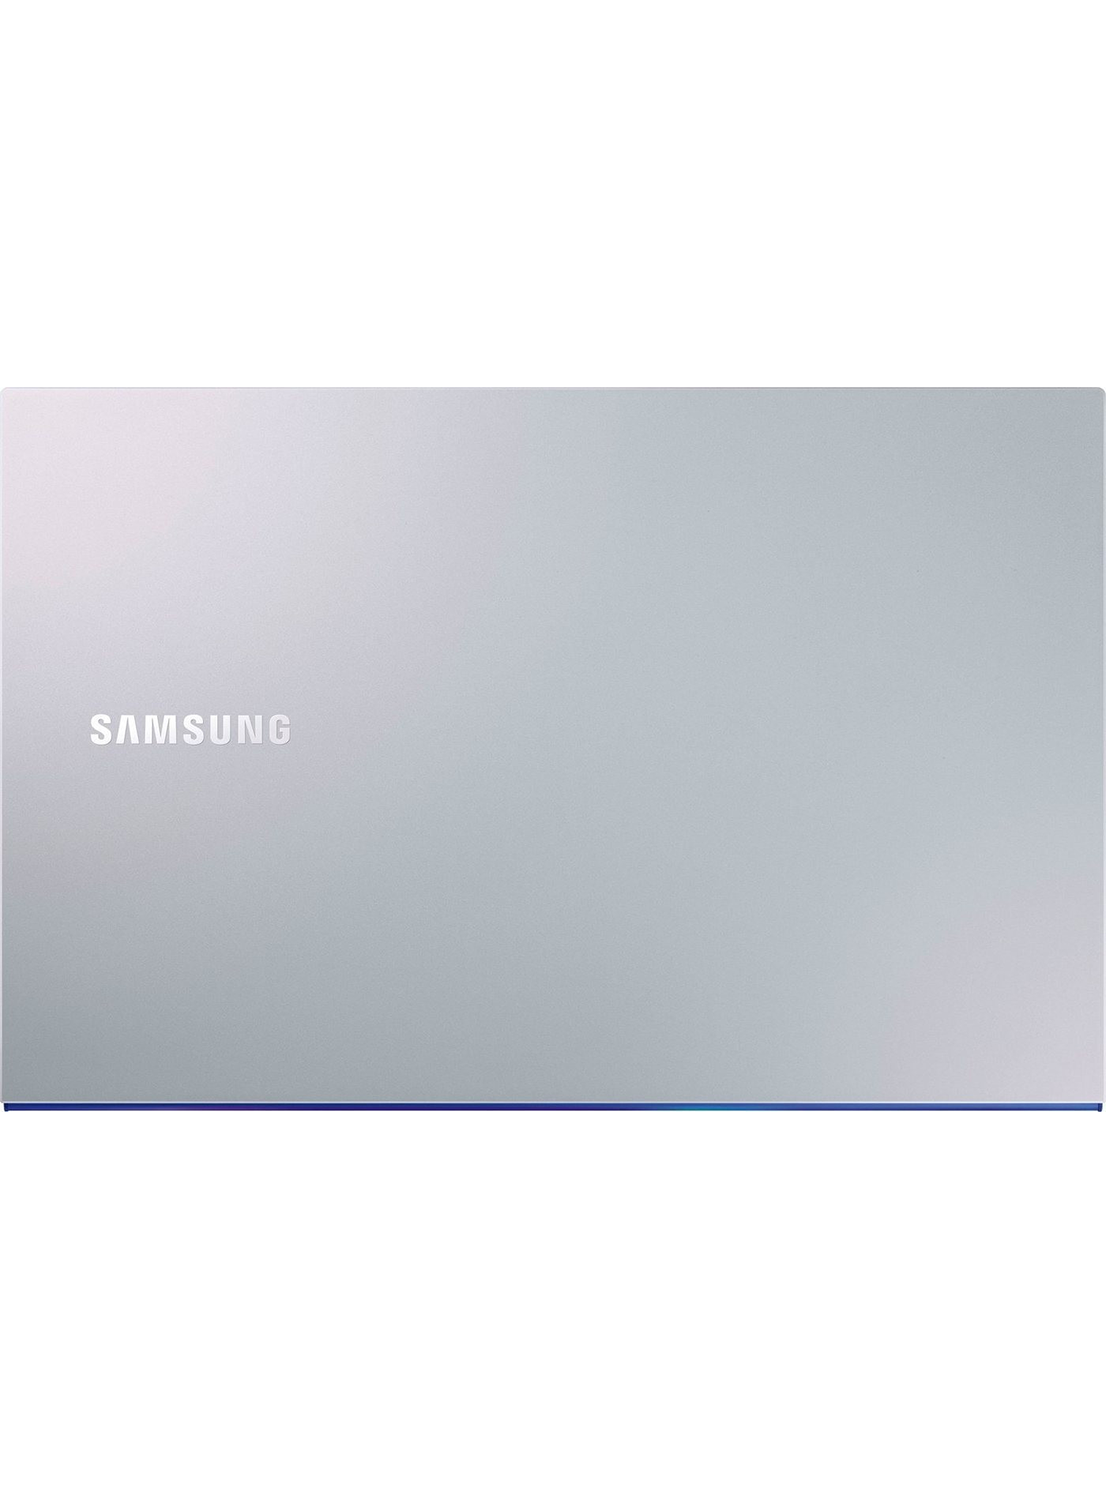 Samsung Galaxy Book ION 930XCJ-K01/ Intel Core i5 10210U/ 8GB/ 256GB